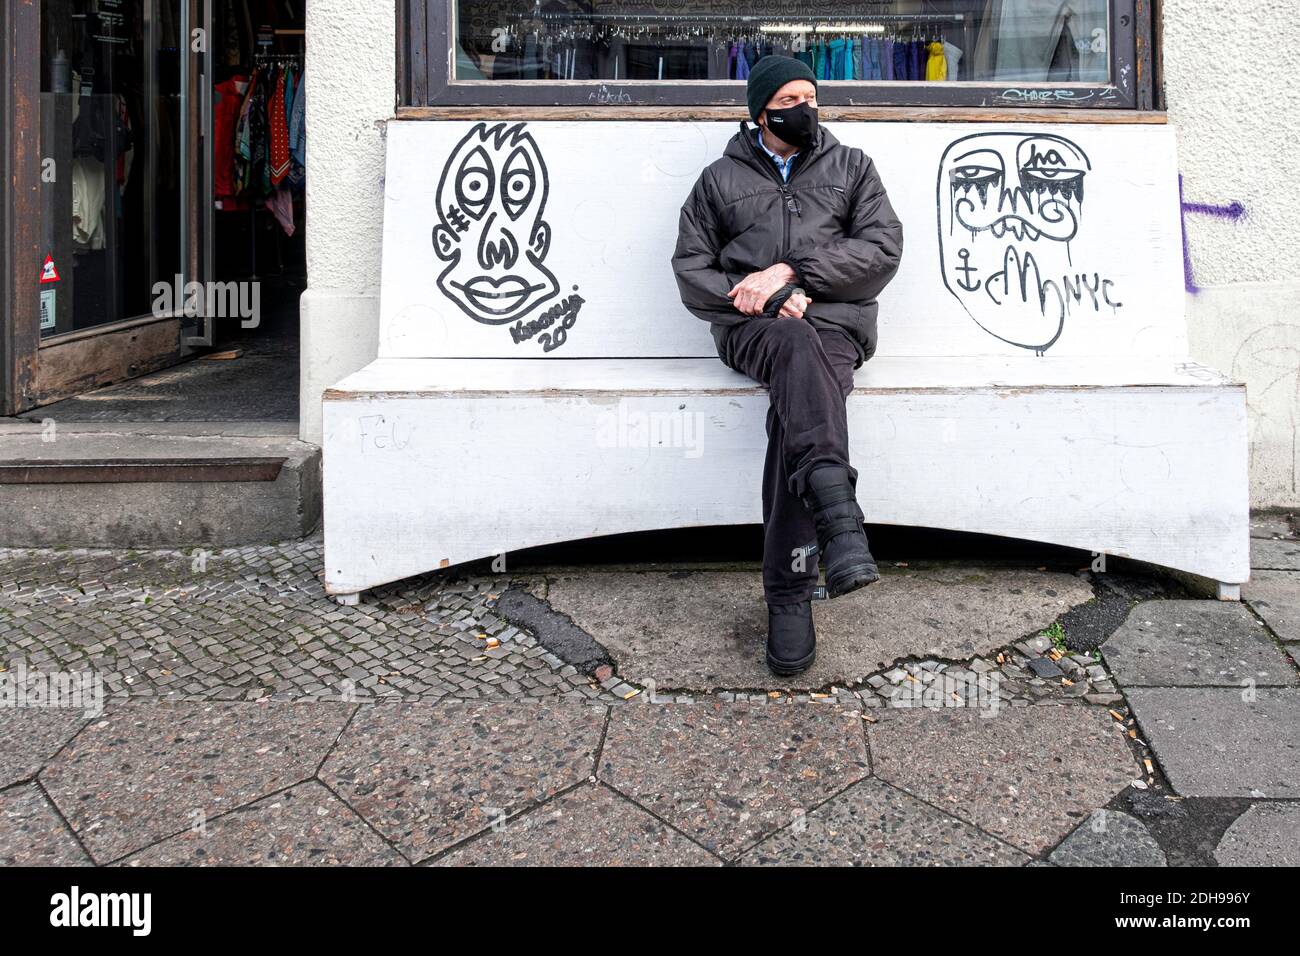 Ältere Haupt tragen Gesichtsmaske sitzt außerhalb Archiv Bekleidungsgeschäft während Corona Pandemie. Rosenthaler Strasse 72,Mitte,Berlin,Deutschland Stockfoto